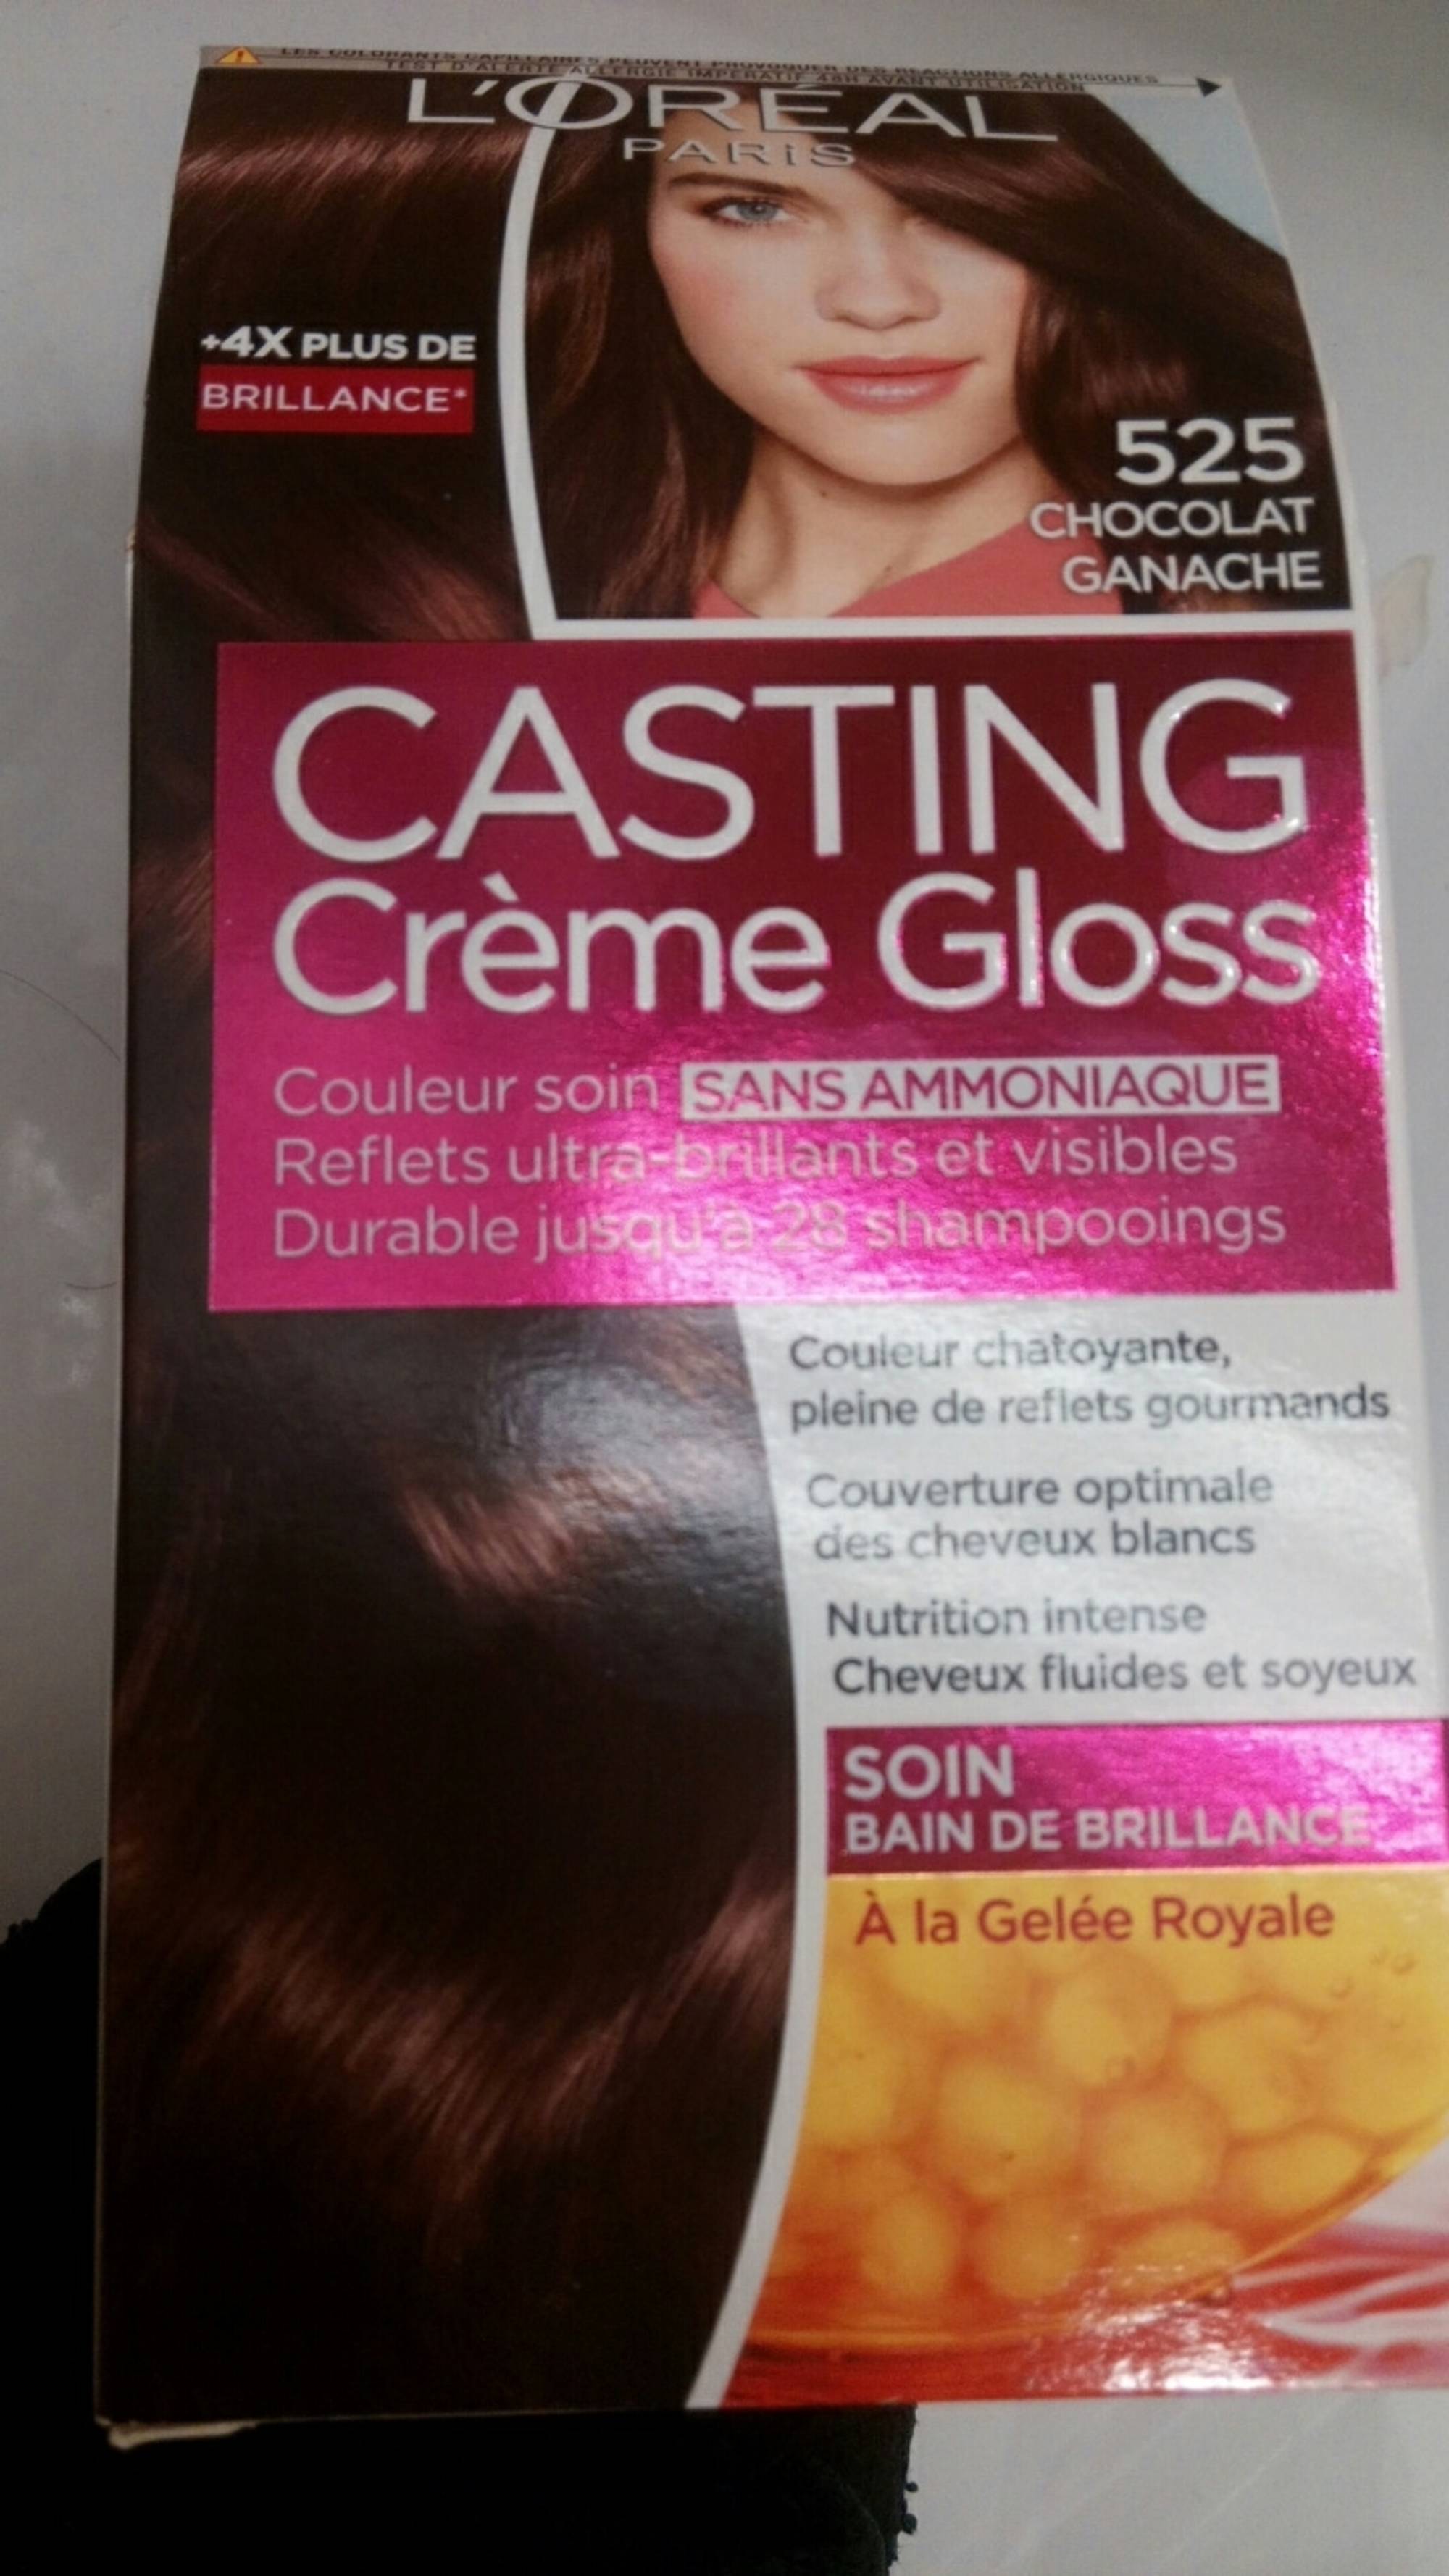 L'ORÉAL - Casting crème gloss - Coloration 525 chocolat ganche